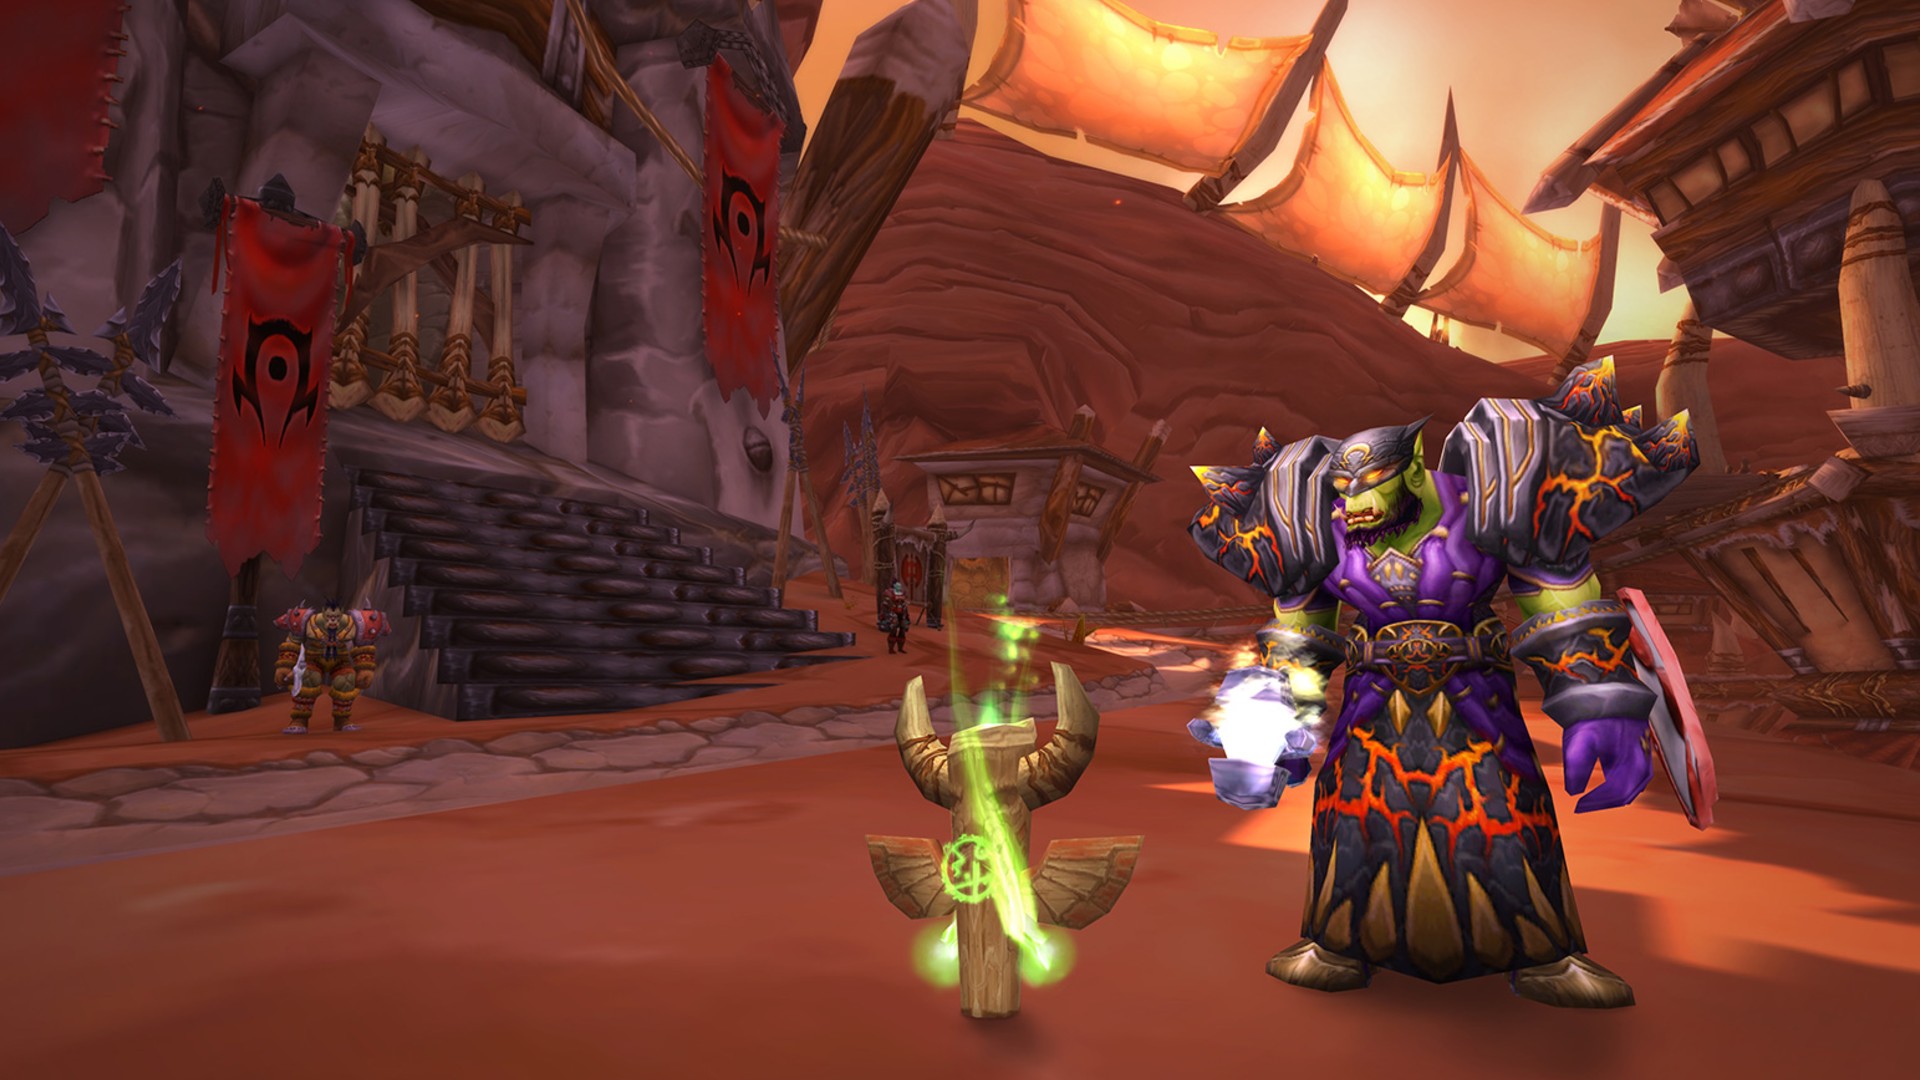 Beste MMORPG -spill: World of Warcraft Classic. Bildet viser en ork som står i nærheten av en gjenstand